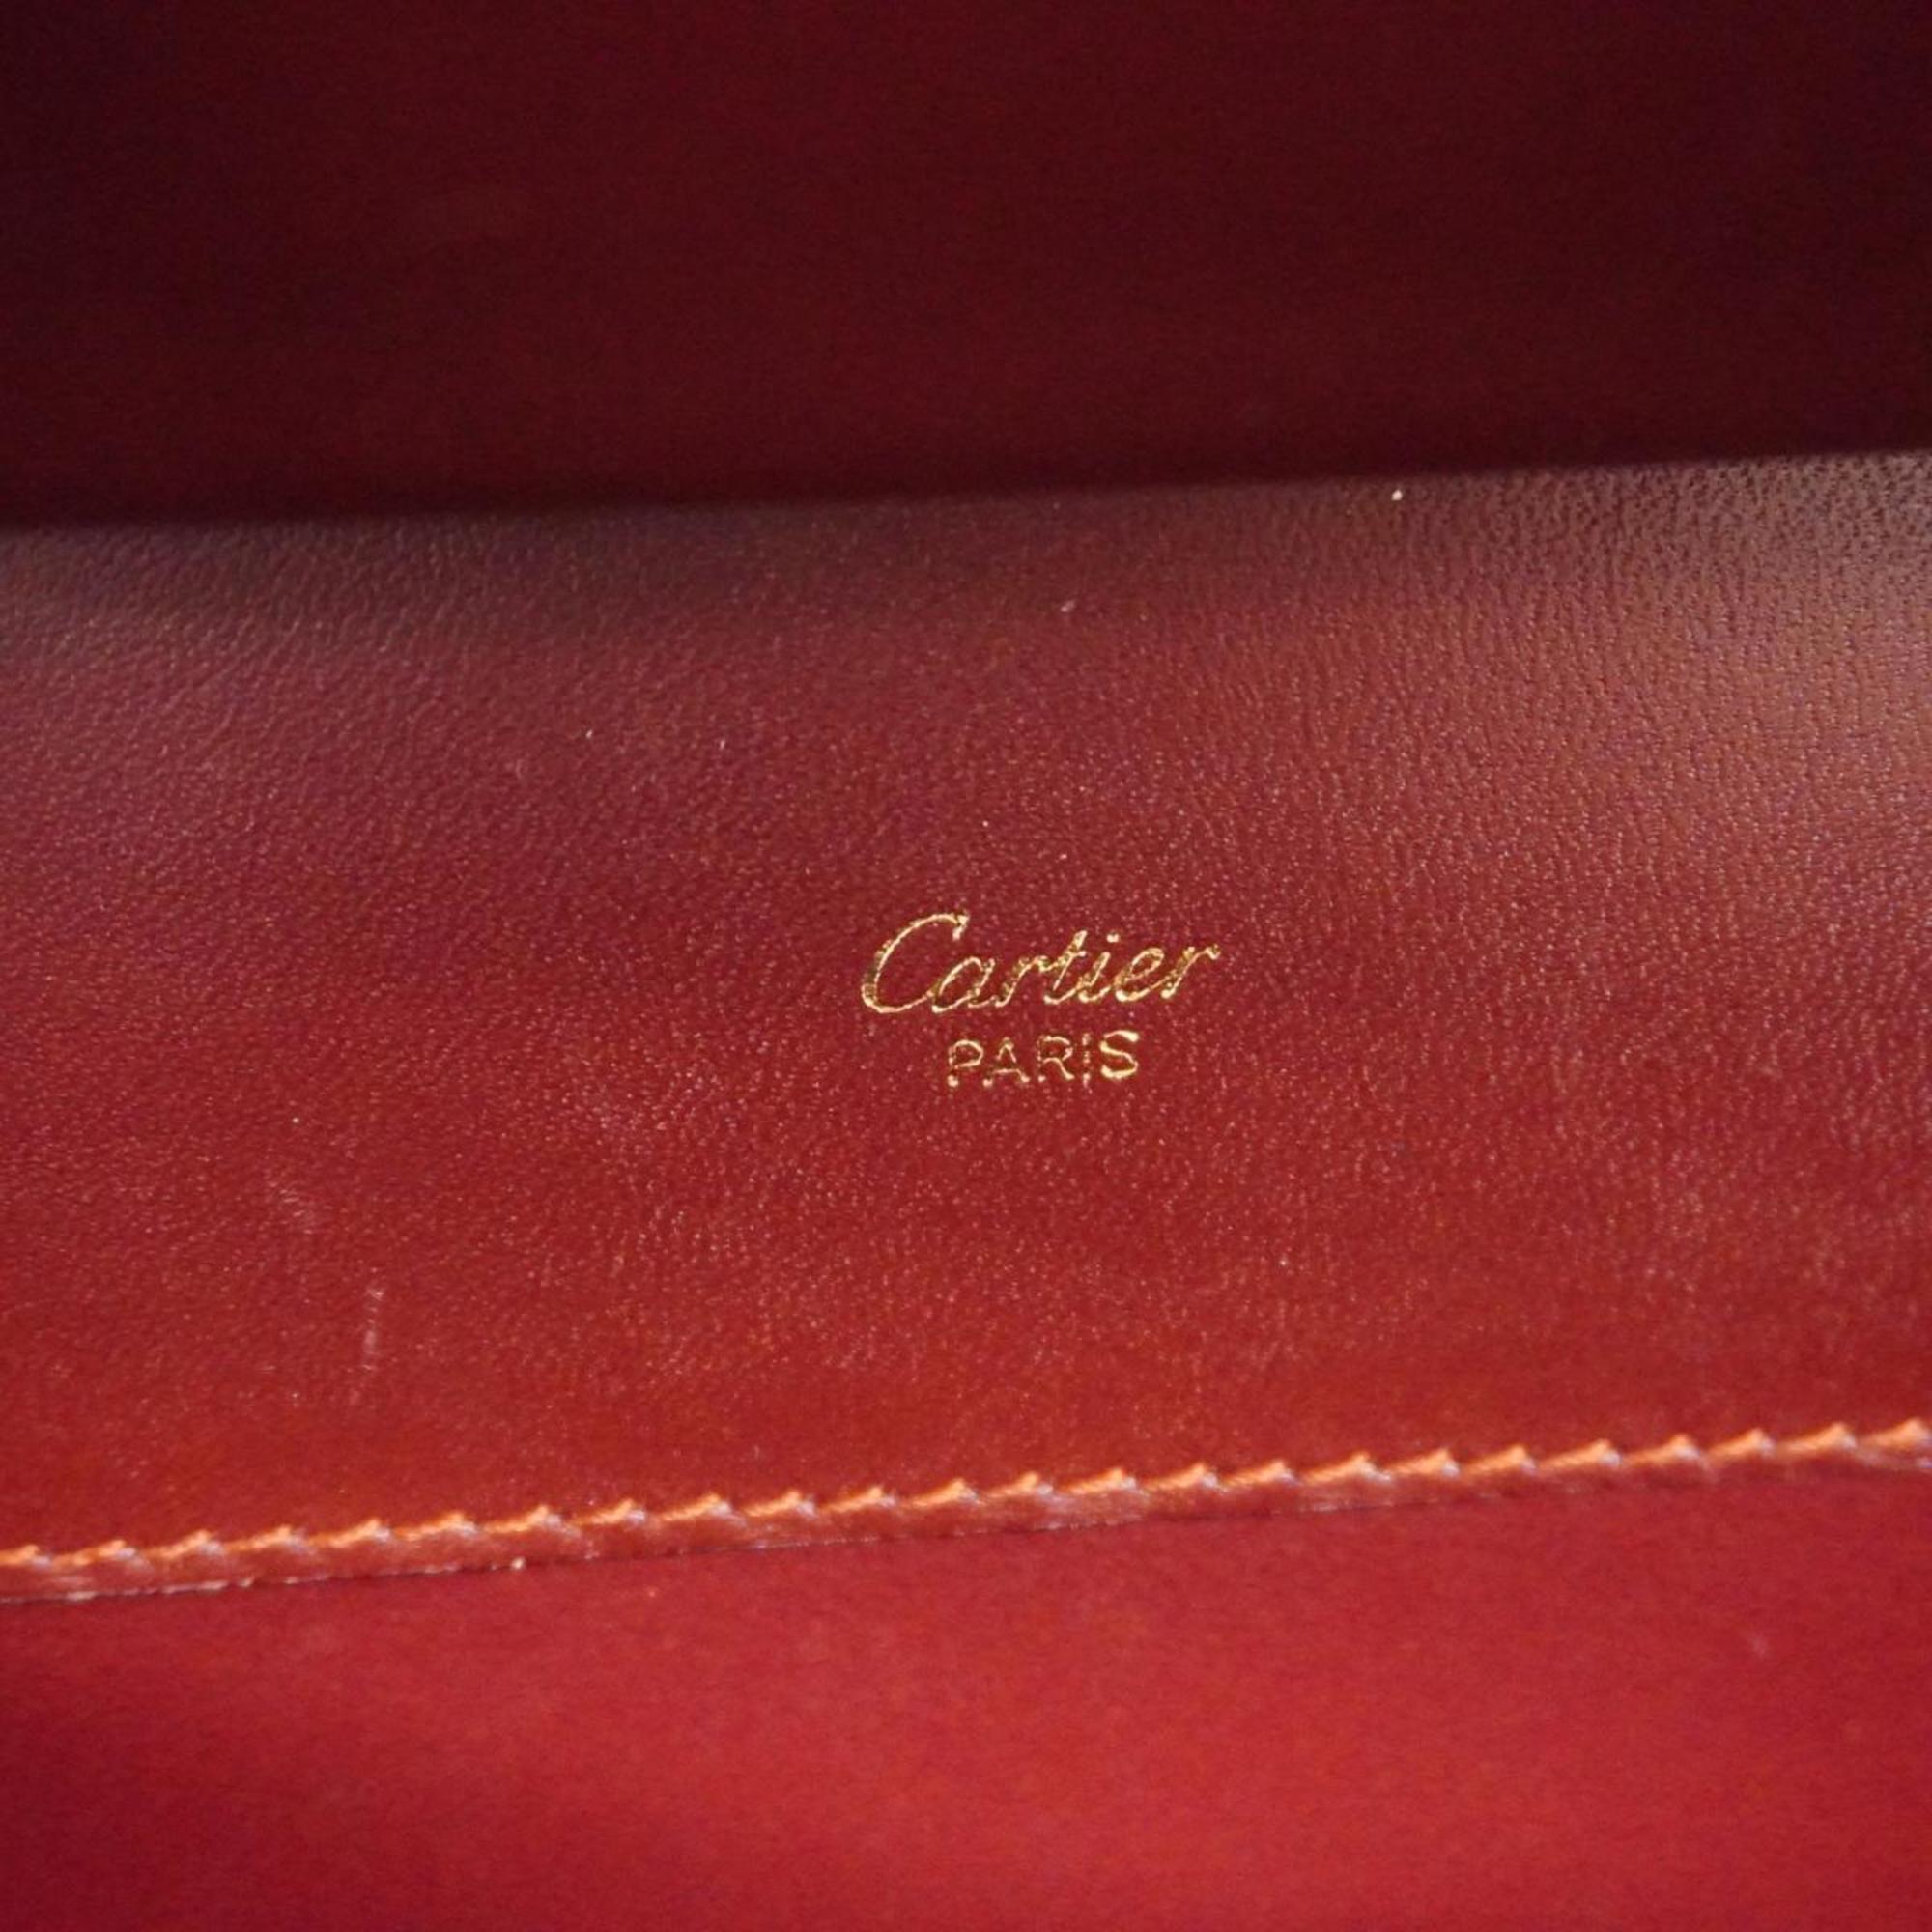 カルティエ(Cartier) カルティエ ショルダーバッグ マスト レザー ボルドー   レディース